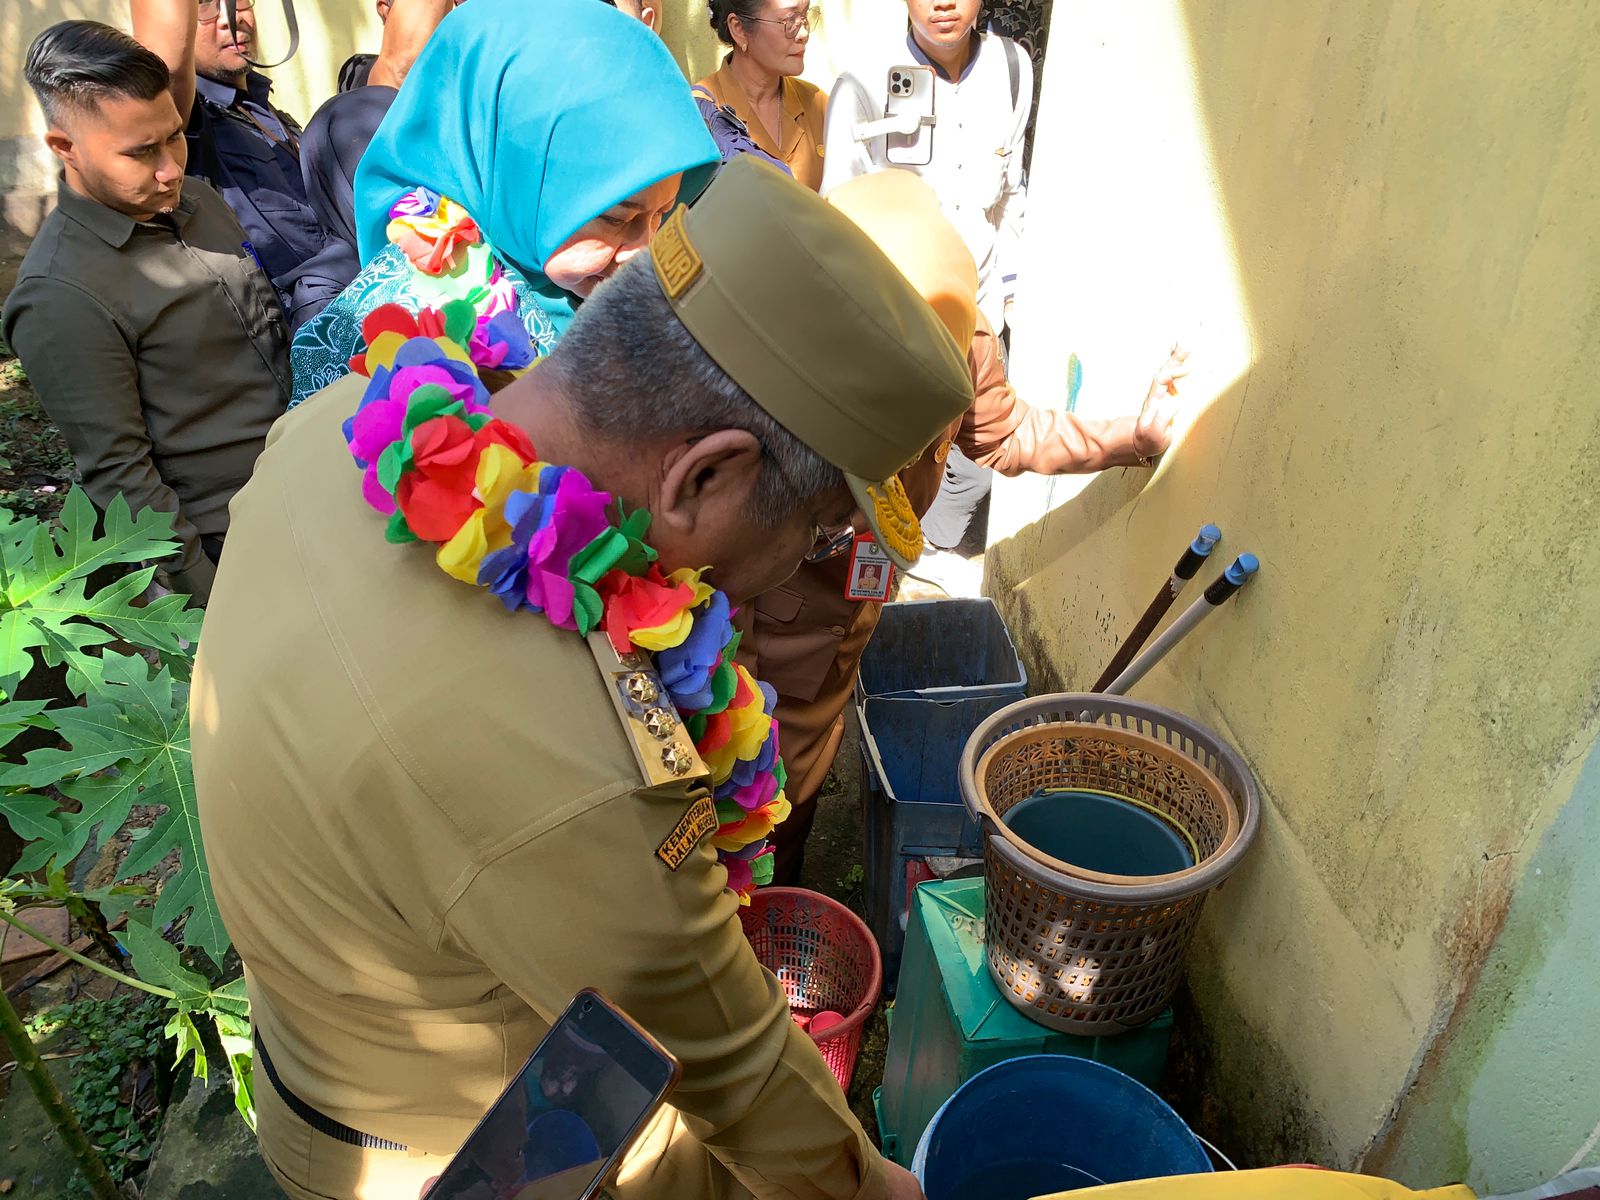 Pj Gubernur Kalbar, Harisson memeriksa sejumlah tempat penampungan air yang berpotensi sebagai sarang nyamuk di SDN 02 Bengkayang. (Foto: Jauhari)